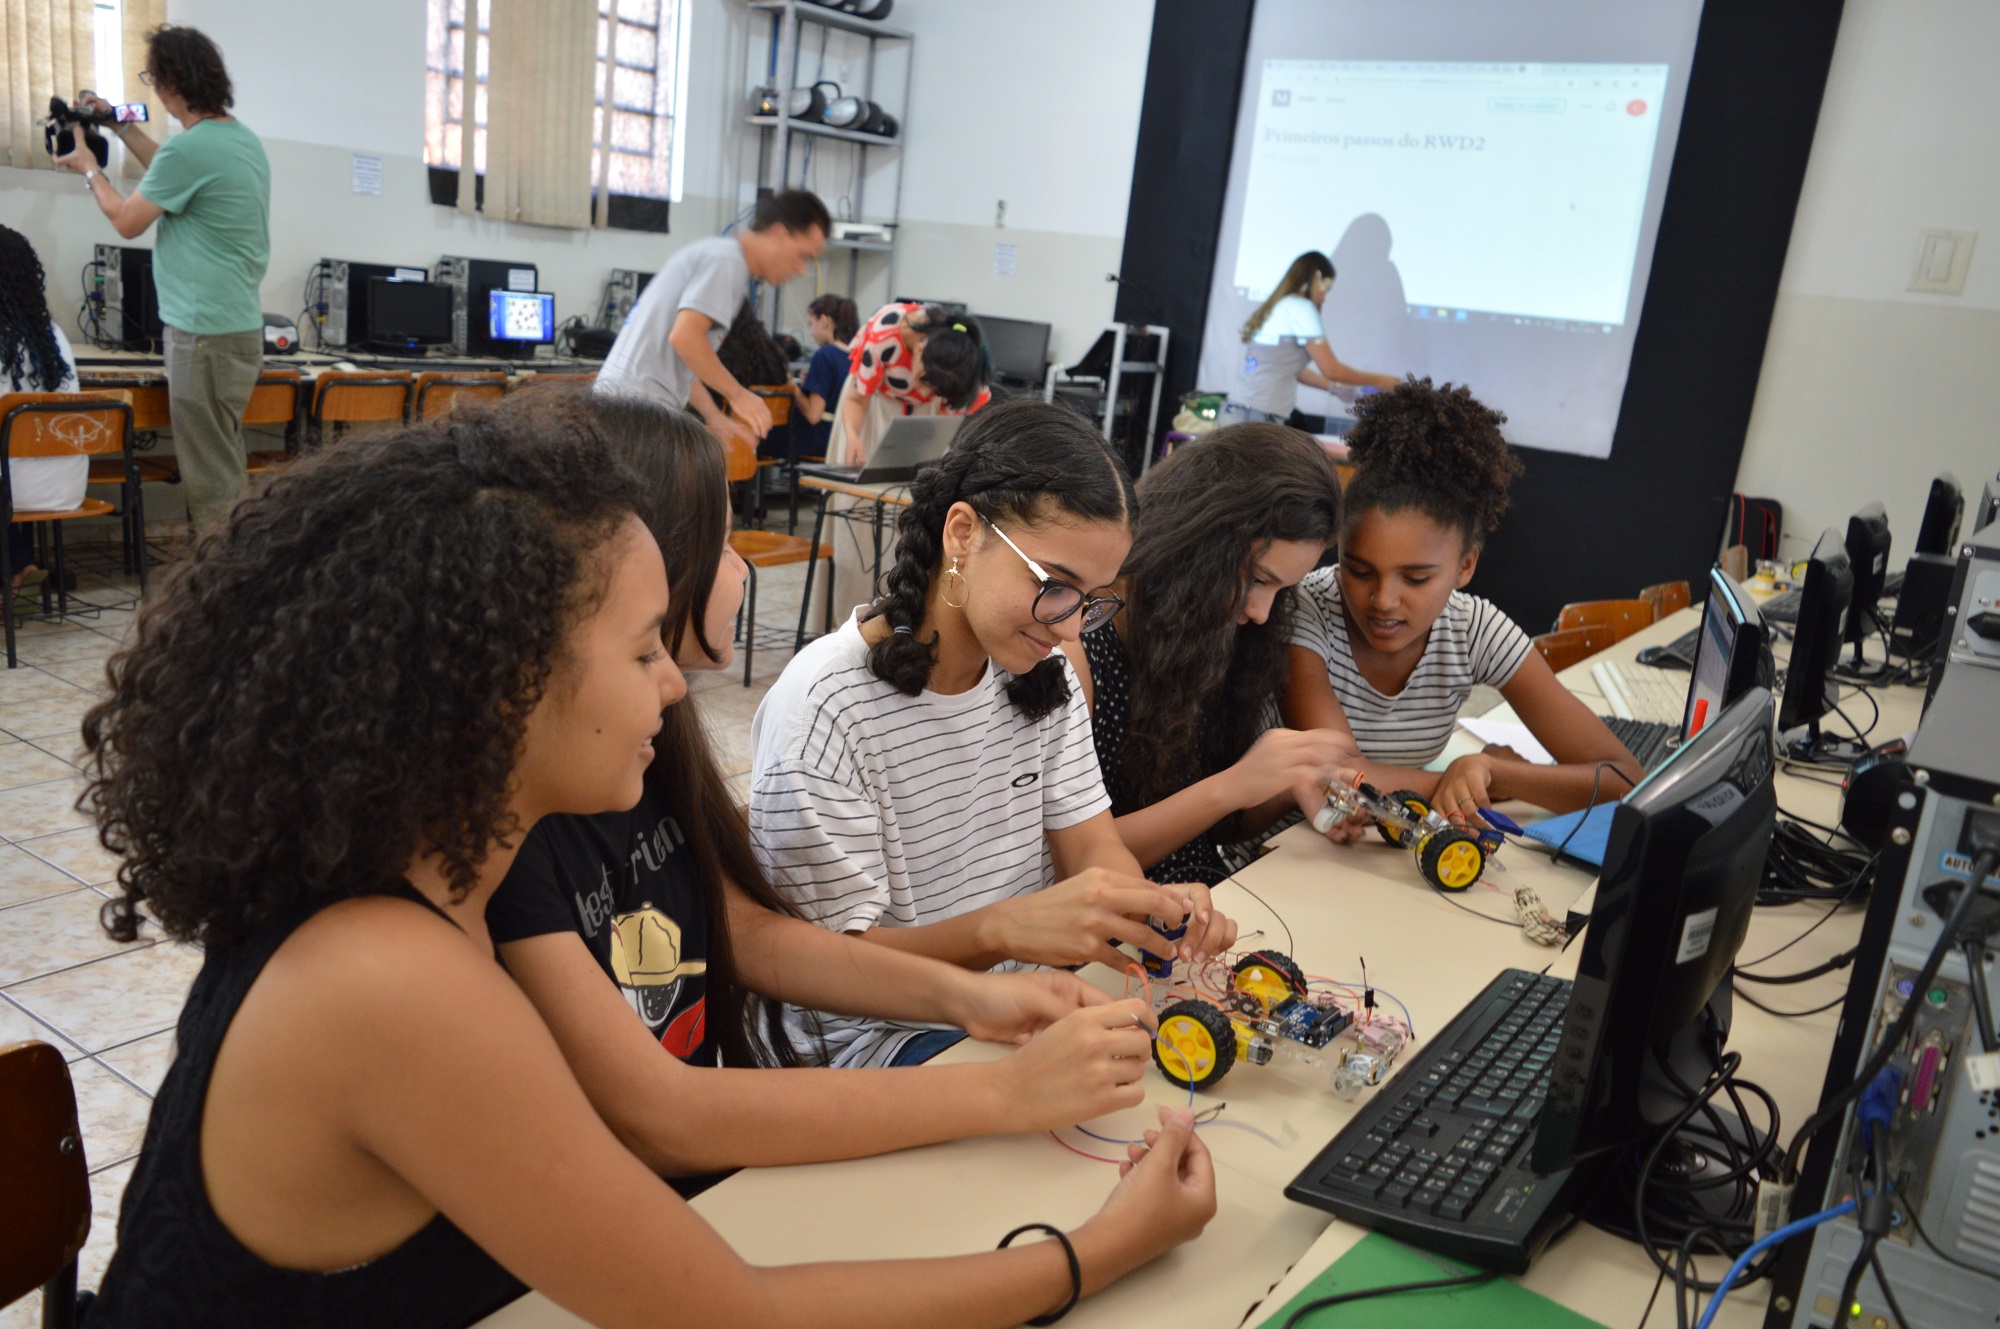 Oficina do projeto Steam4Girls realizada na Escola Municipal João Braz, em Goiânia.